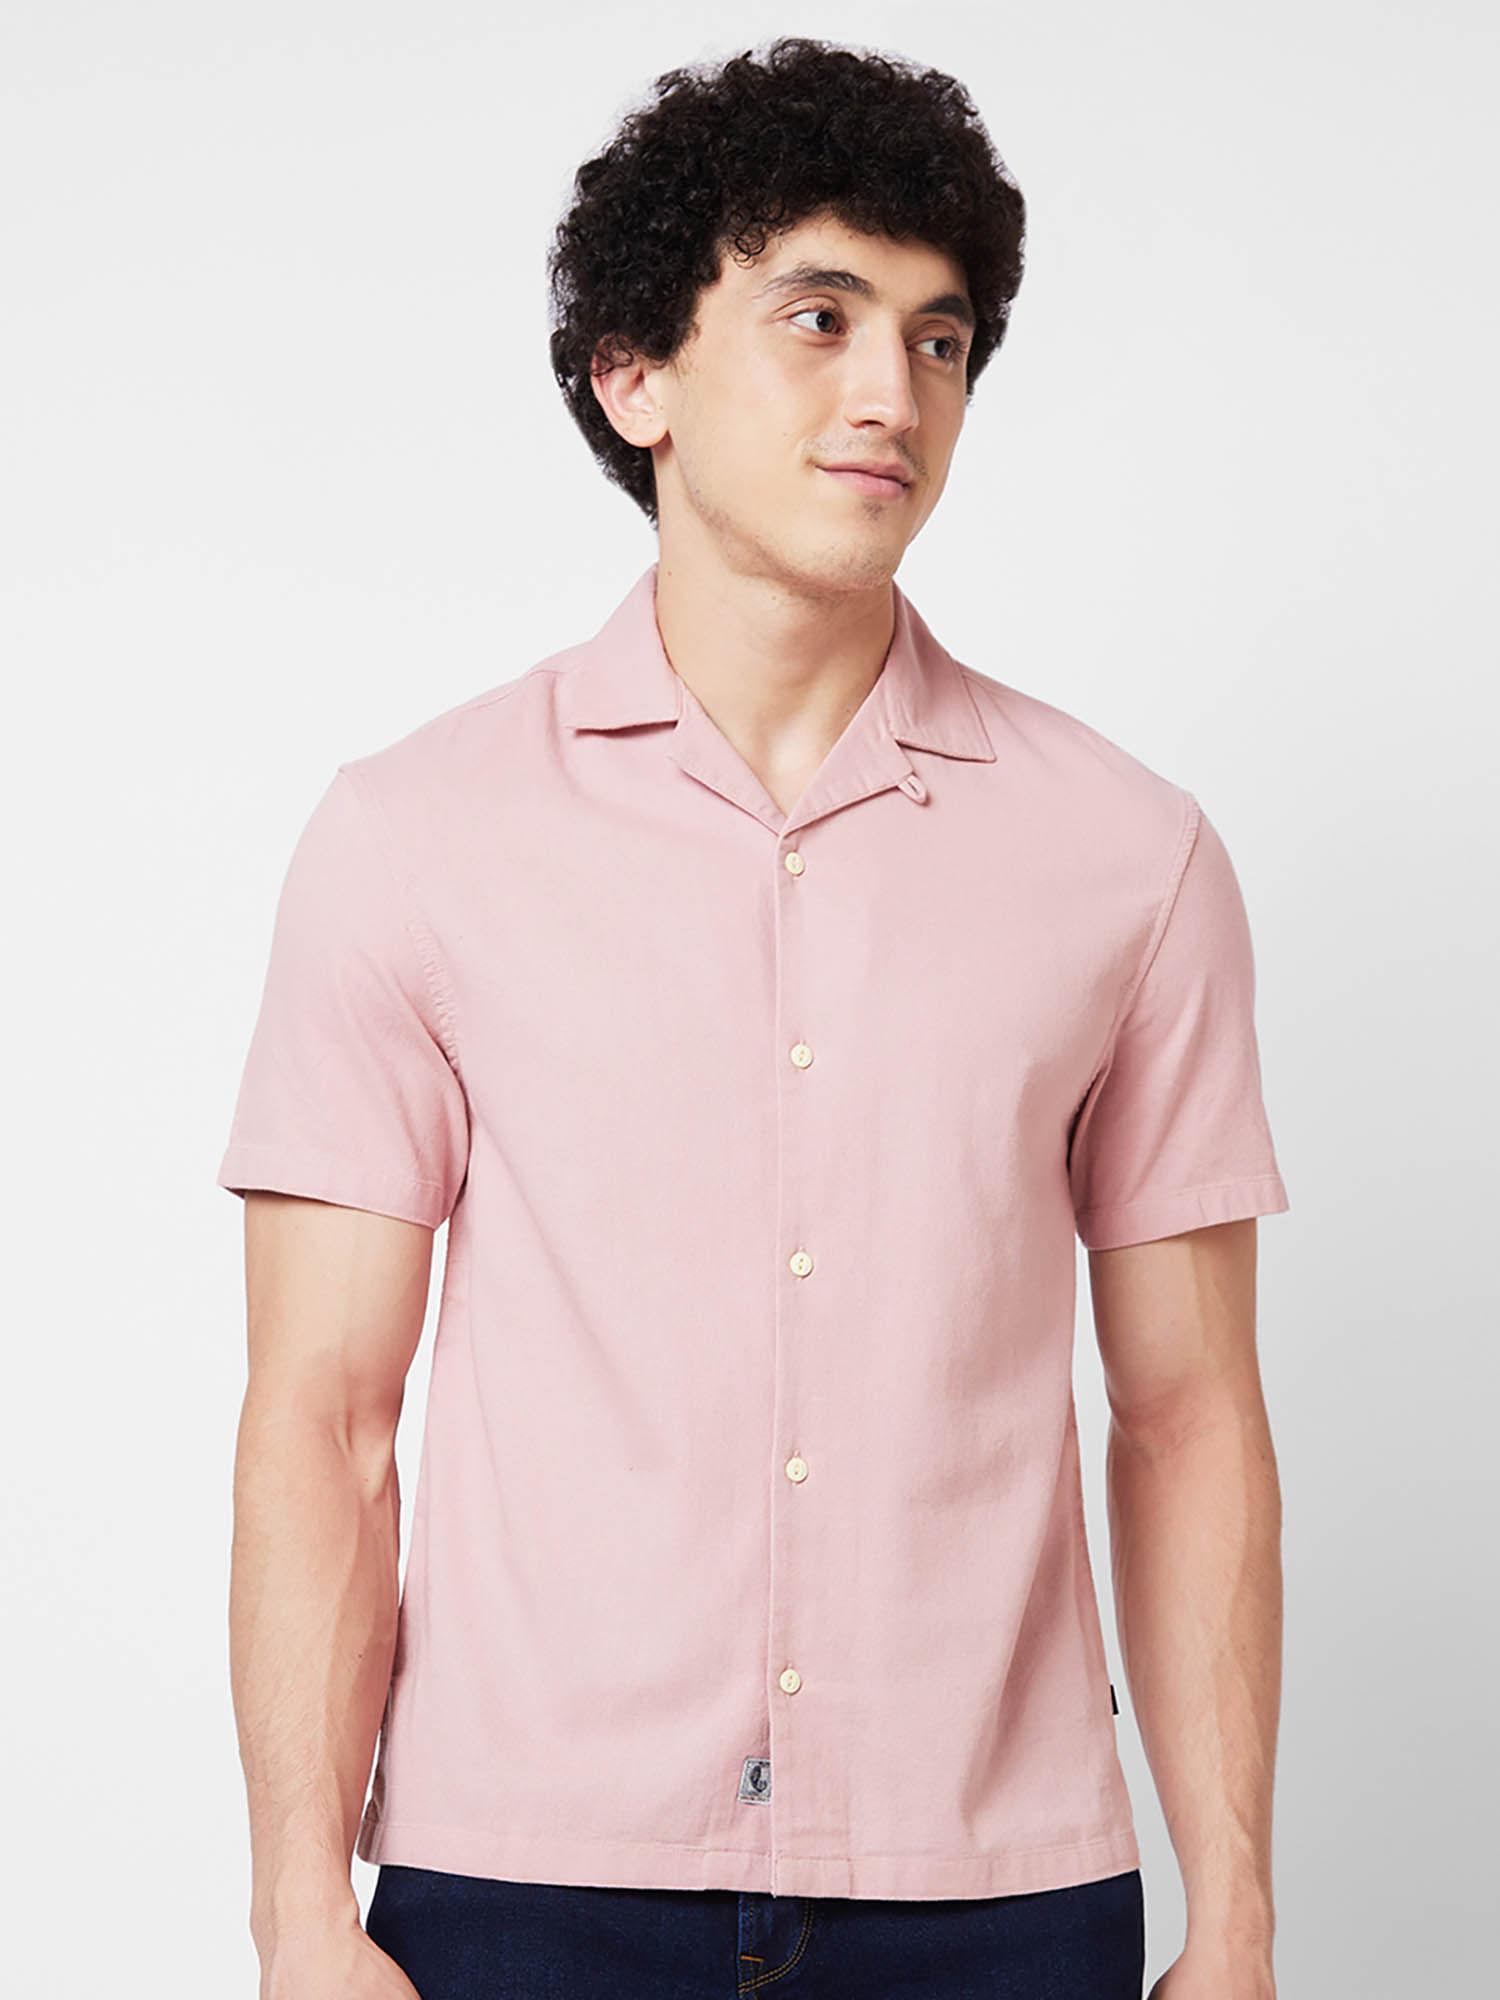 pink-solid-half-sleeve-shirt-for-men